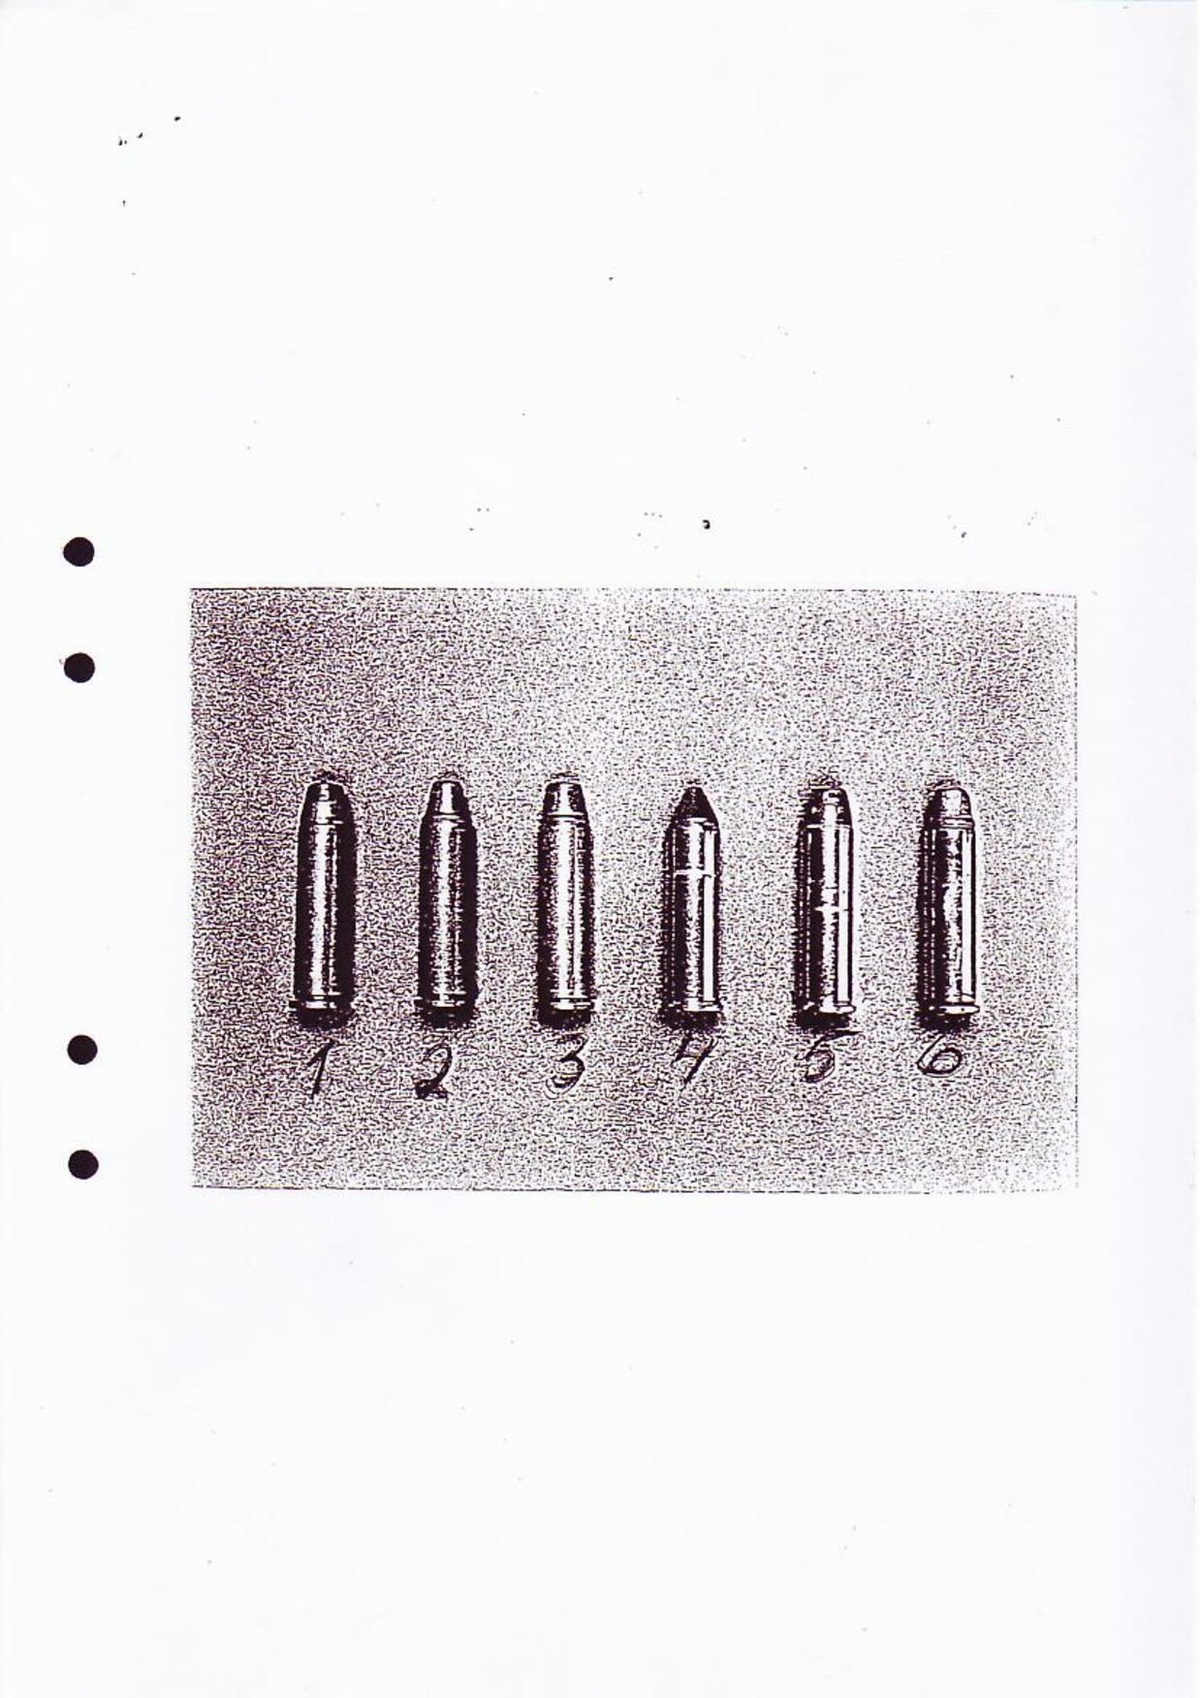 Pol-1994-12-02 XAI16579-00 Förhör Magnuminnehavare.pdf